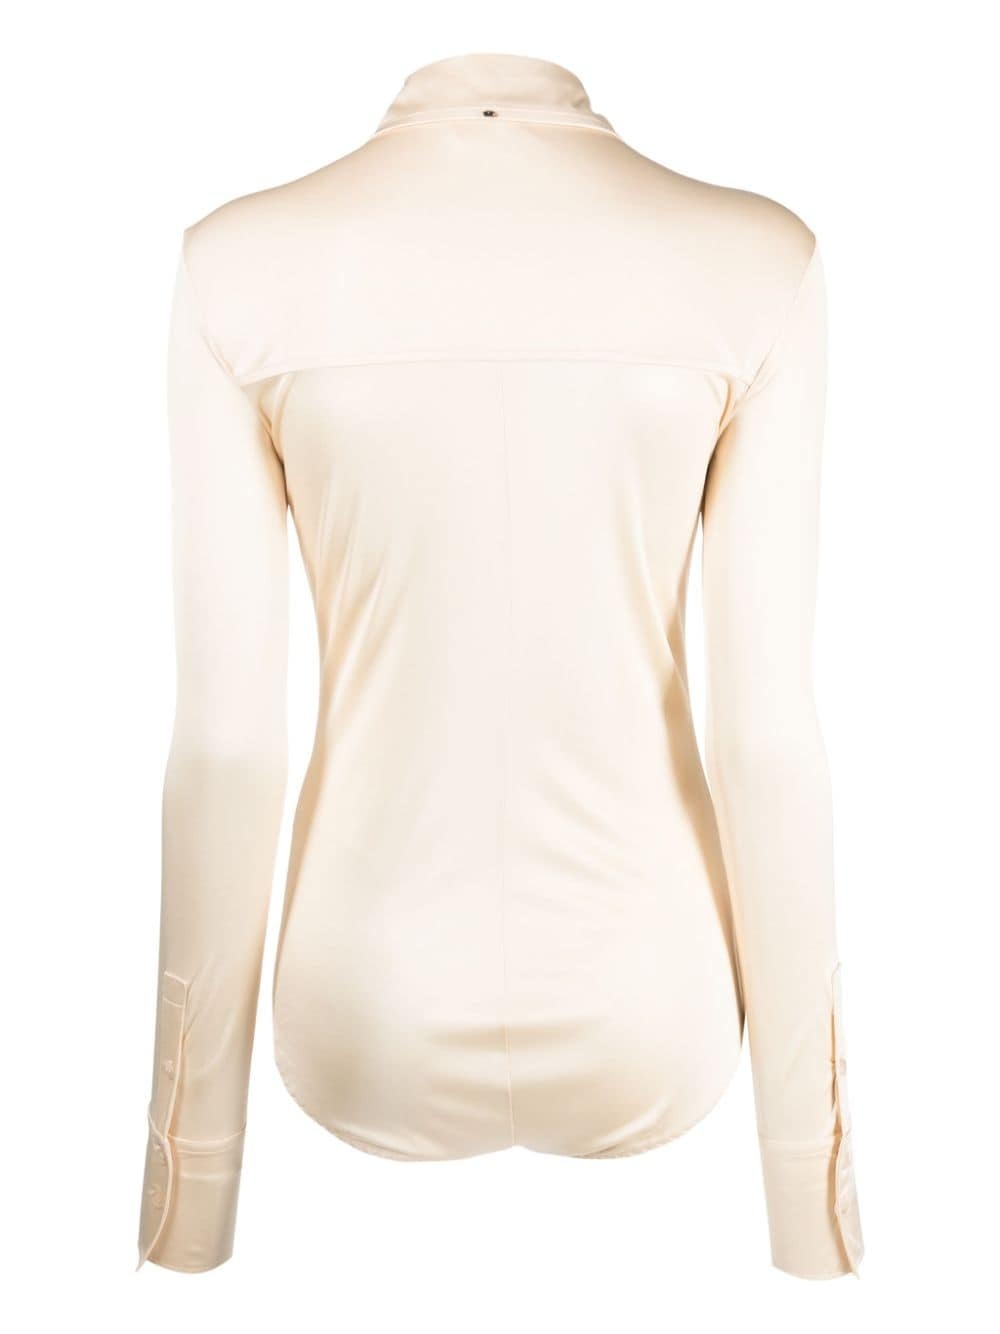 satin-finish spread-collar bodysuit - 2